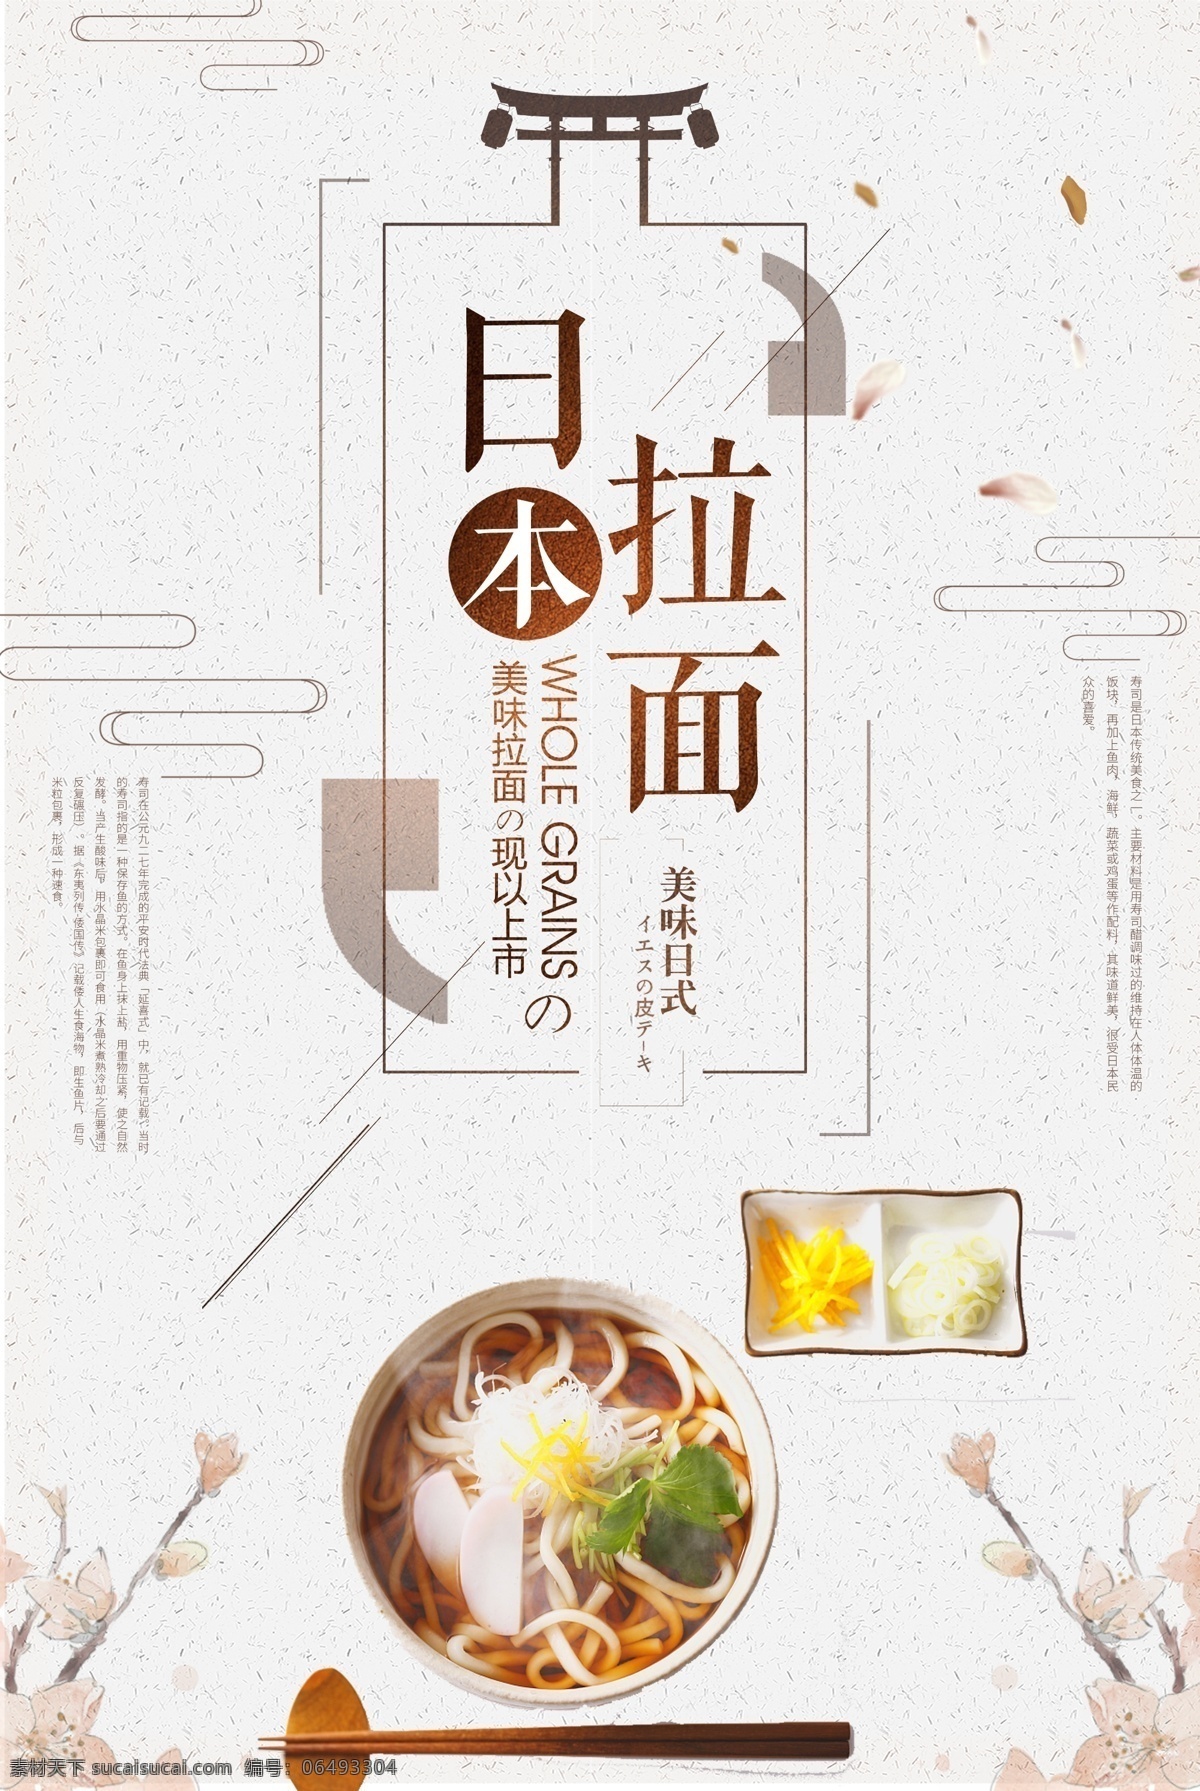 日本 美食 拉面 海报 边框 清新 简约 商业海报 龙纹